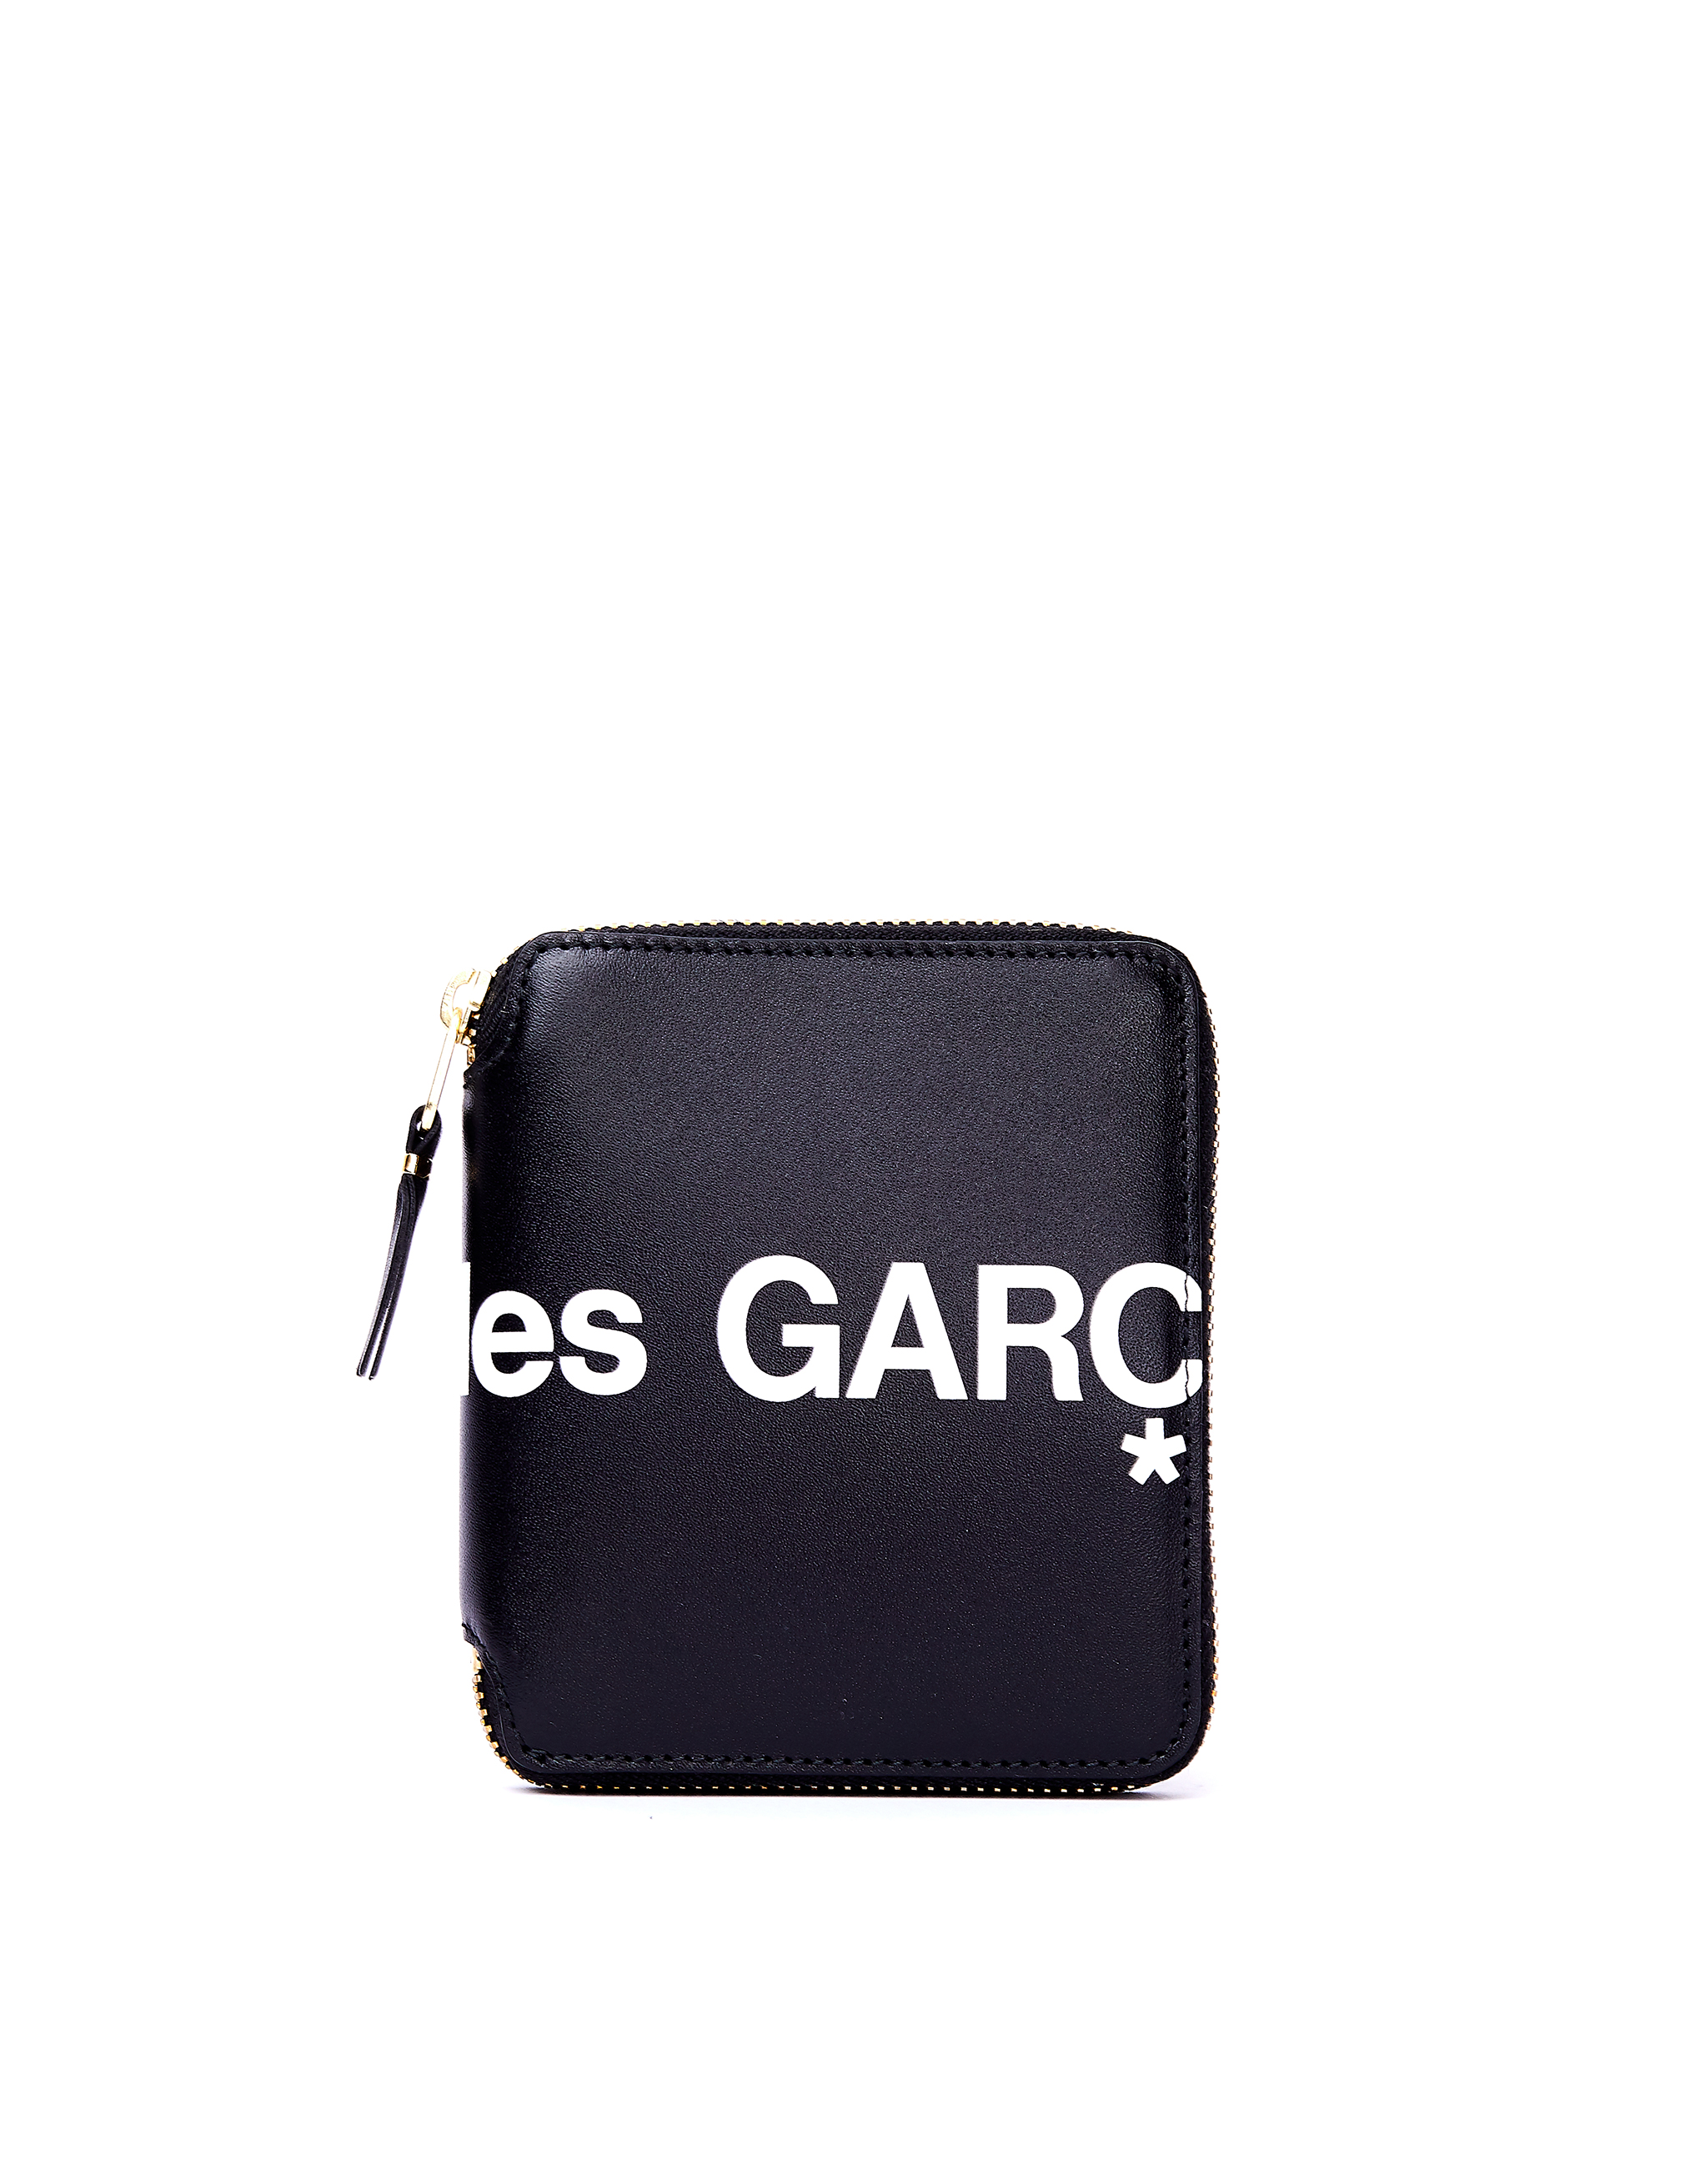 Черный кожаный кошелек с логотипом Comme des Garcons Wallets SA2100HL/blk, размер One Size